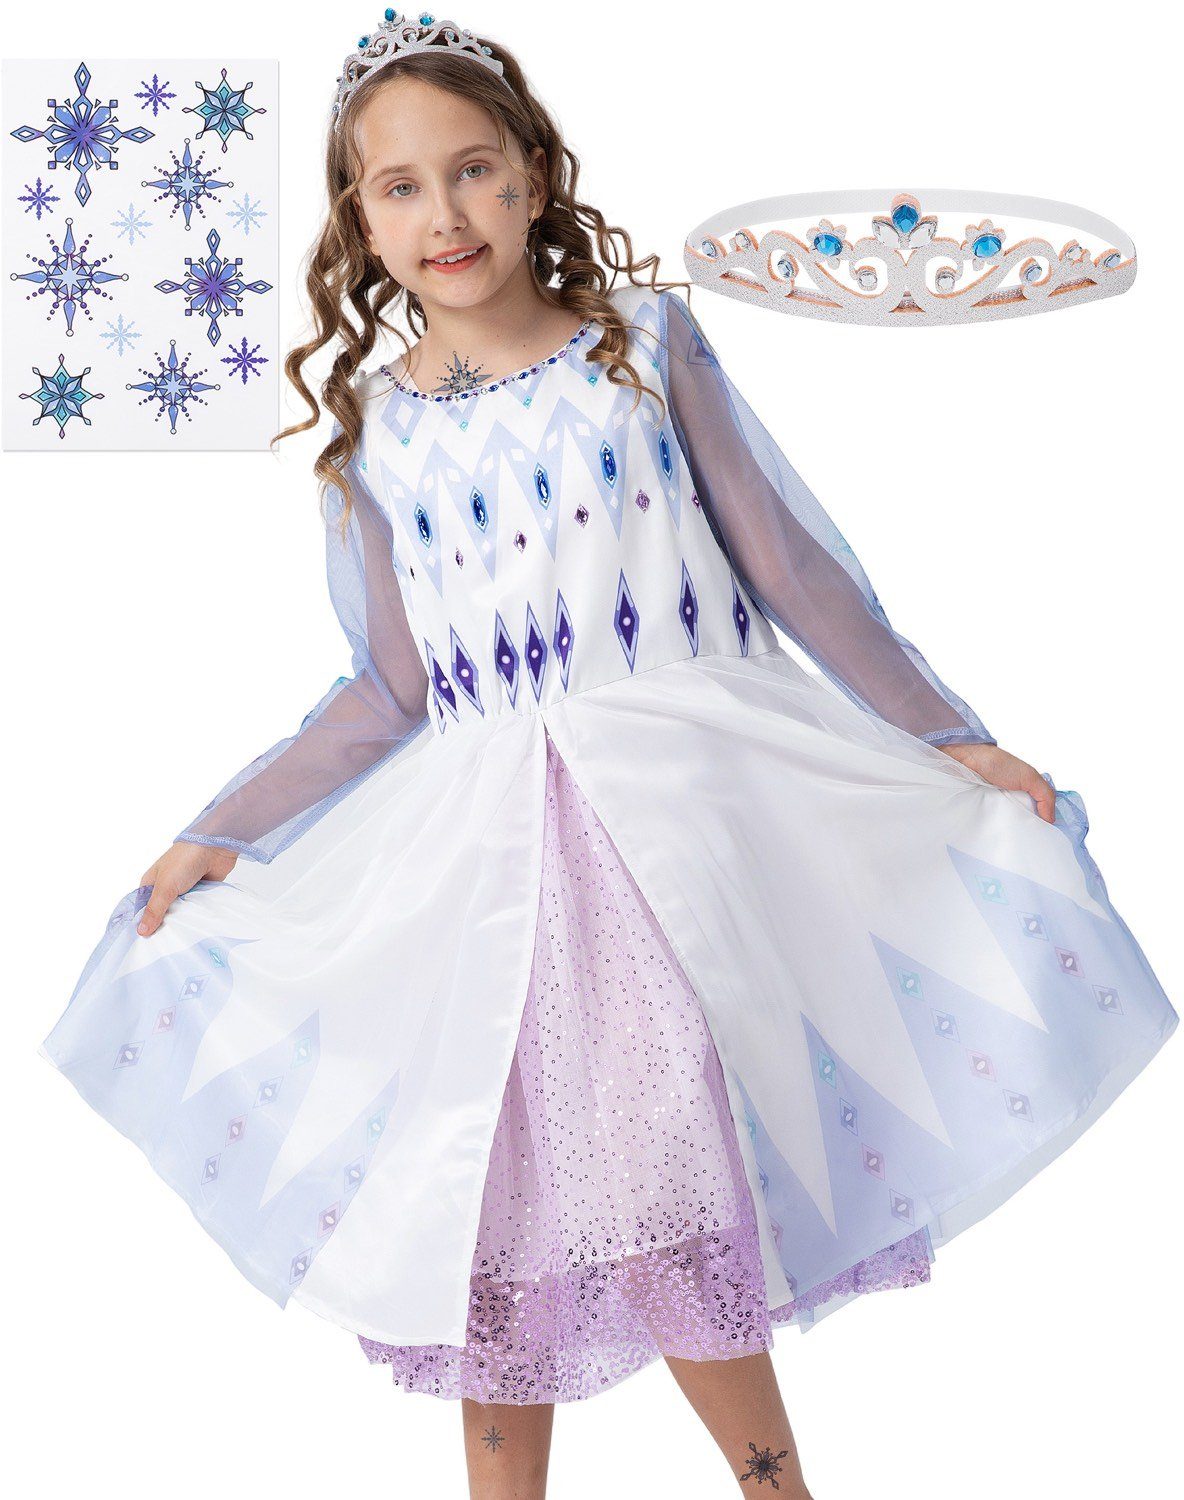 Corimori Prinzessin-Kostüm Prinzessinnen-Kostüm Set für Elsa Fans, Kinder, Prinzessinenkleid für Fasching, Karneval hellblau-weiß, Größe 104/110